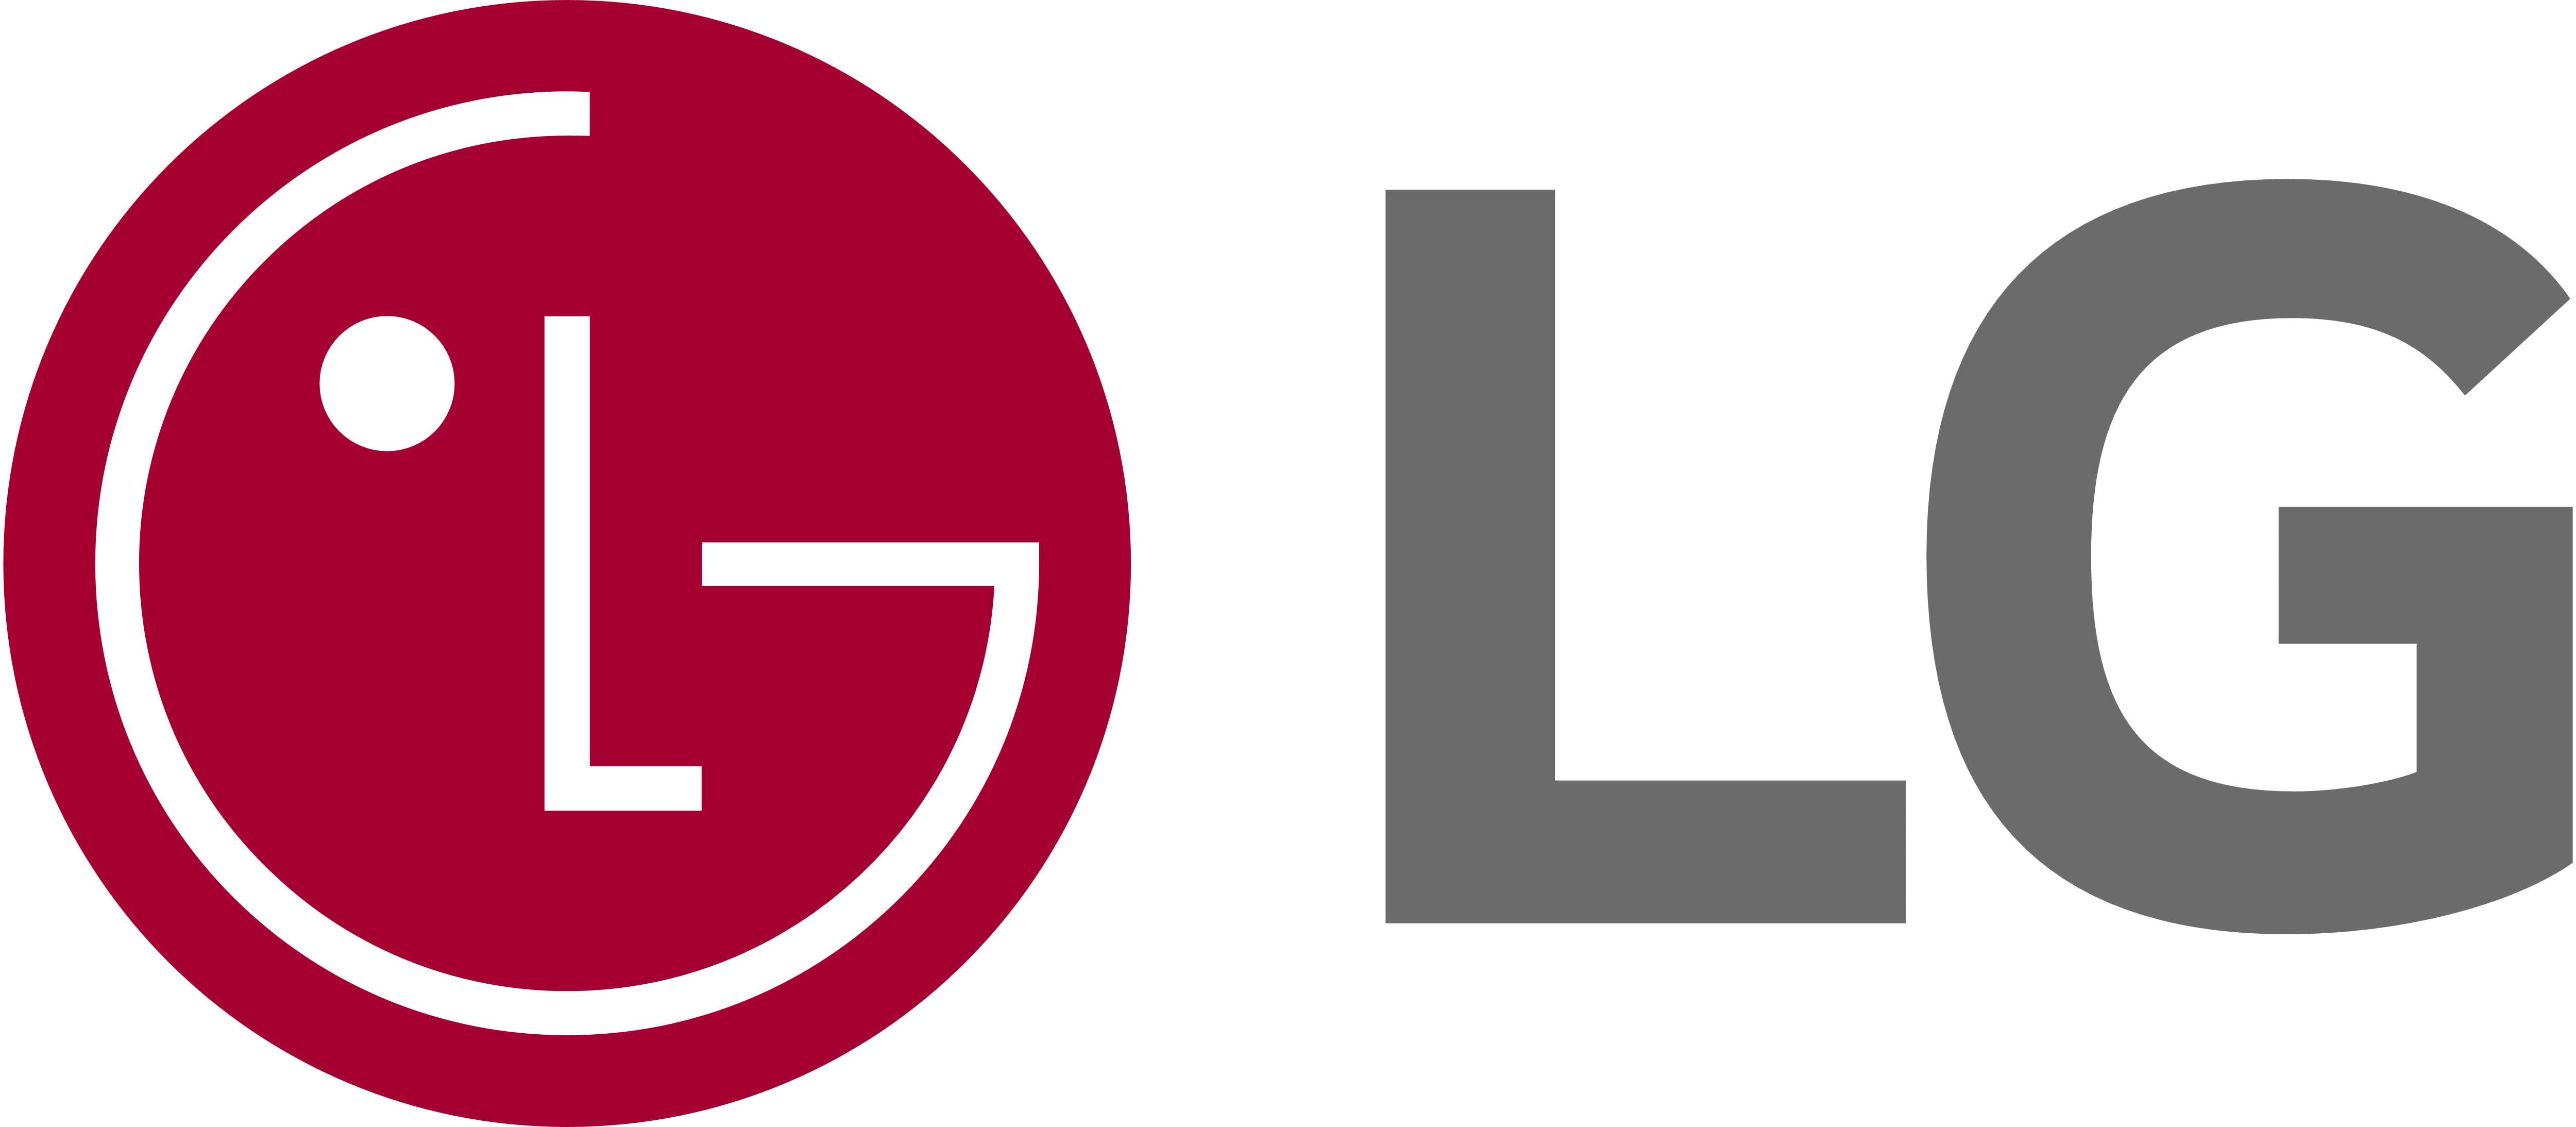 LG Dryer Electrician, GE Dryer Technician